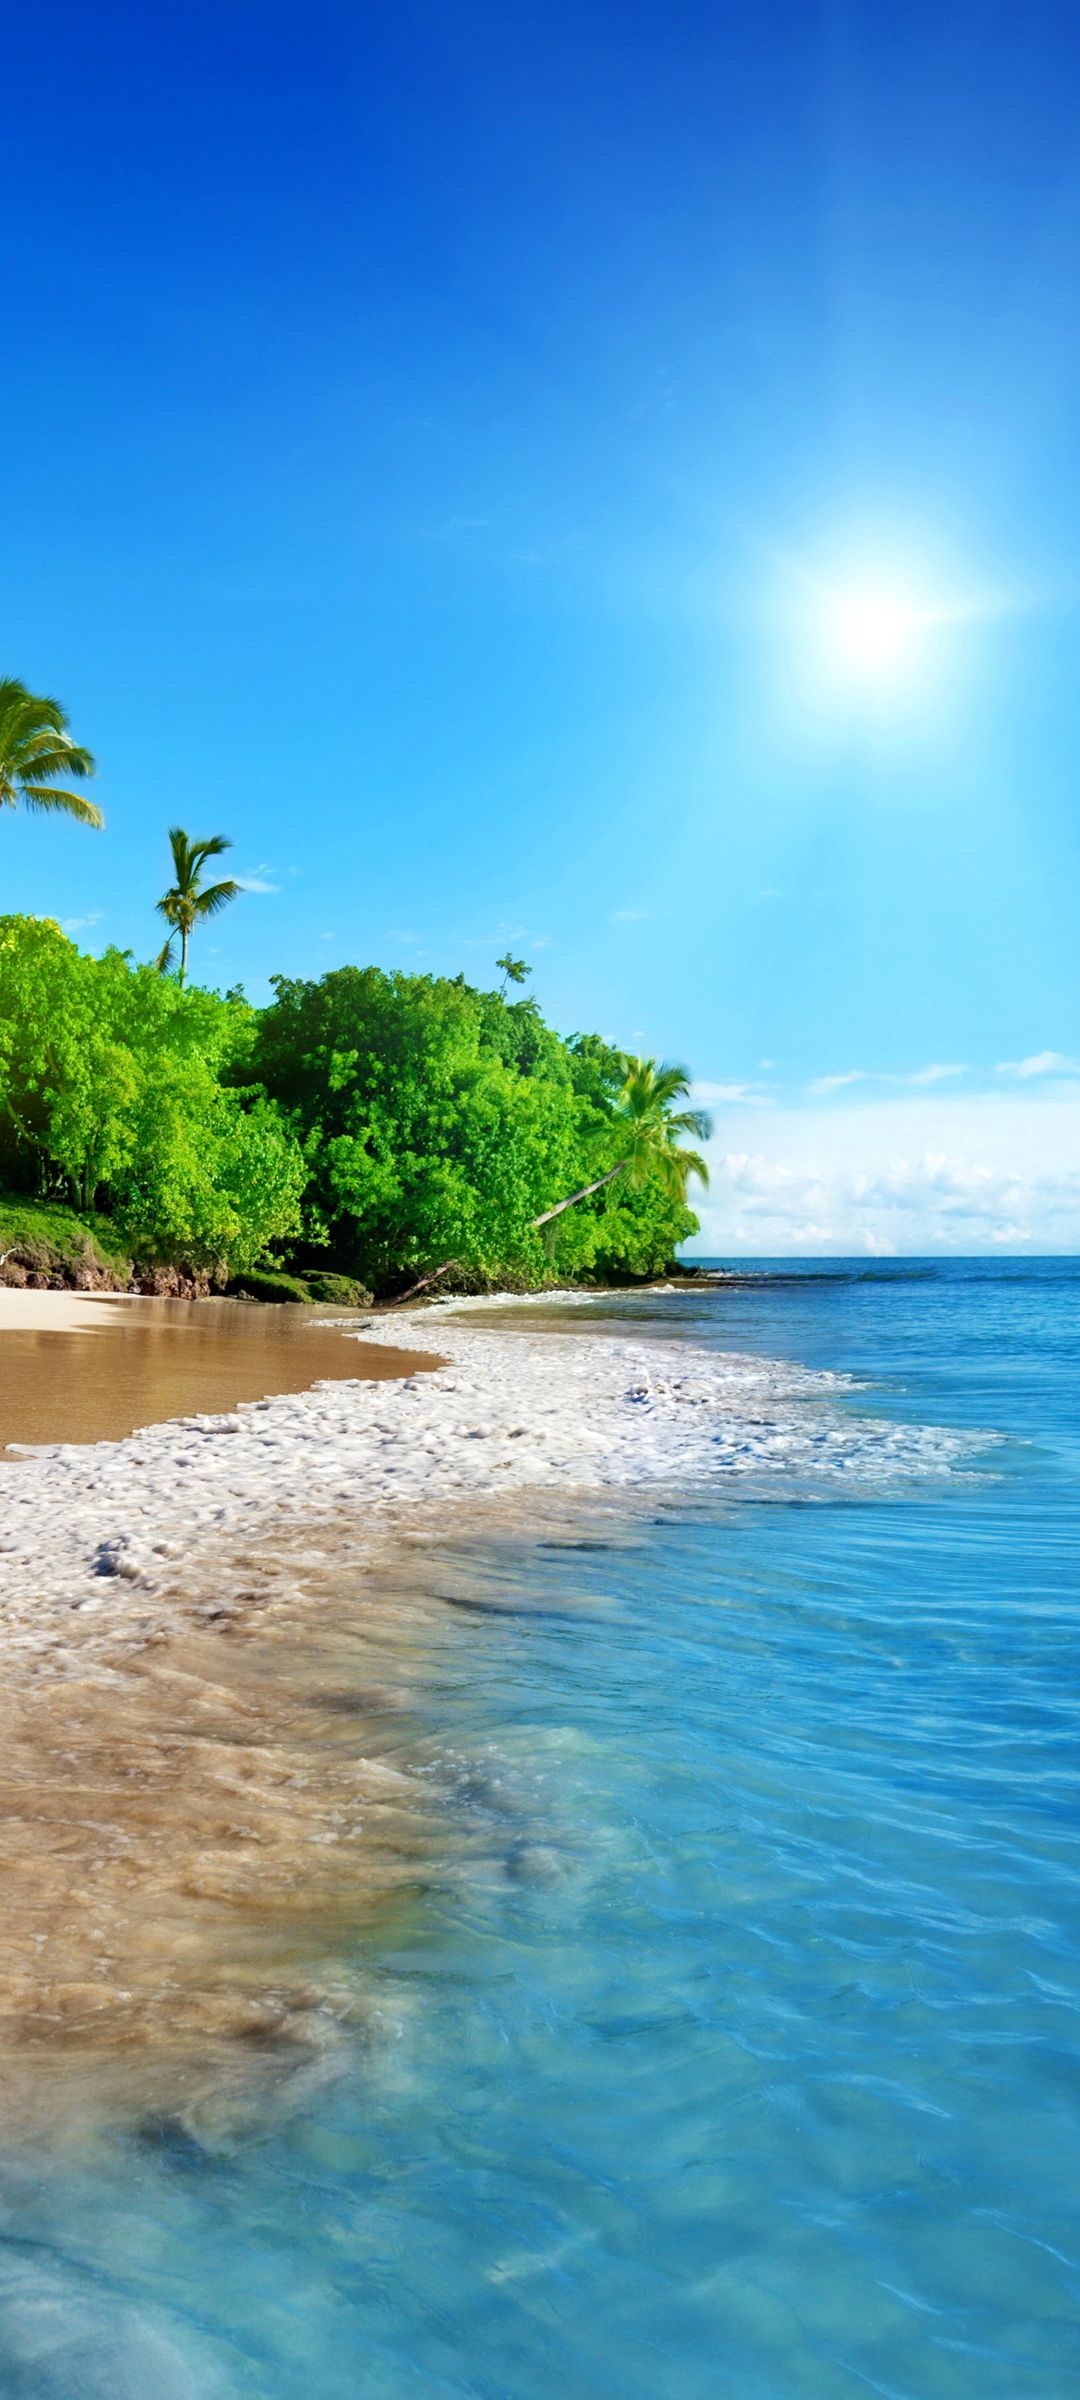 大海的海滩边椰子树与洁白海浪